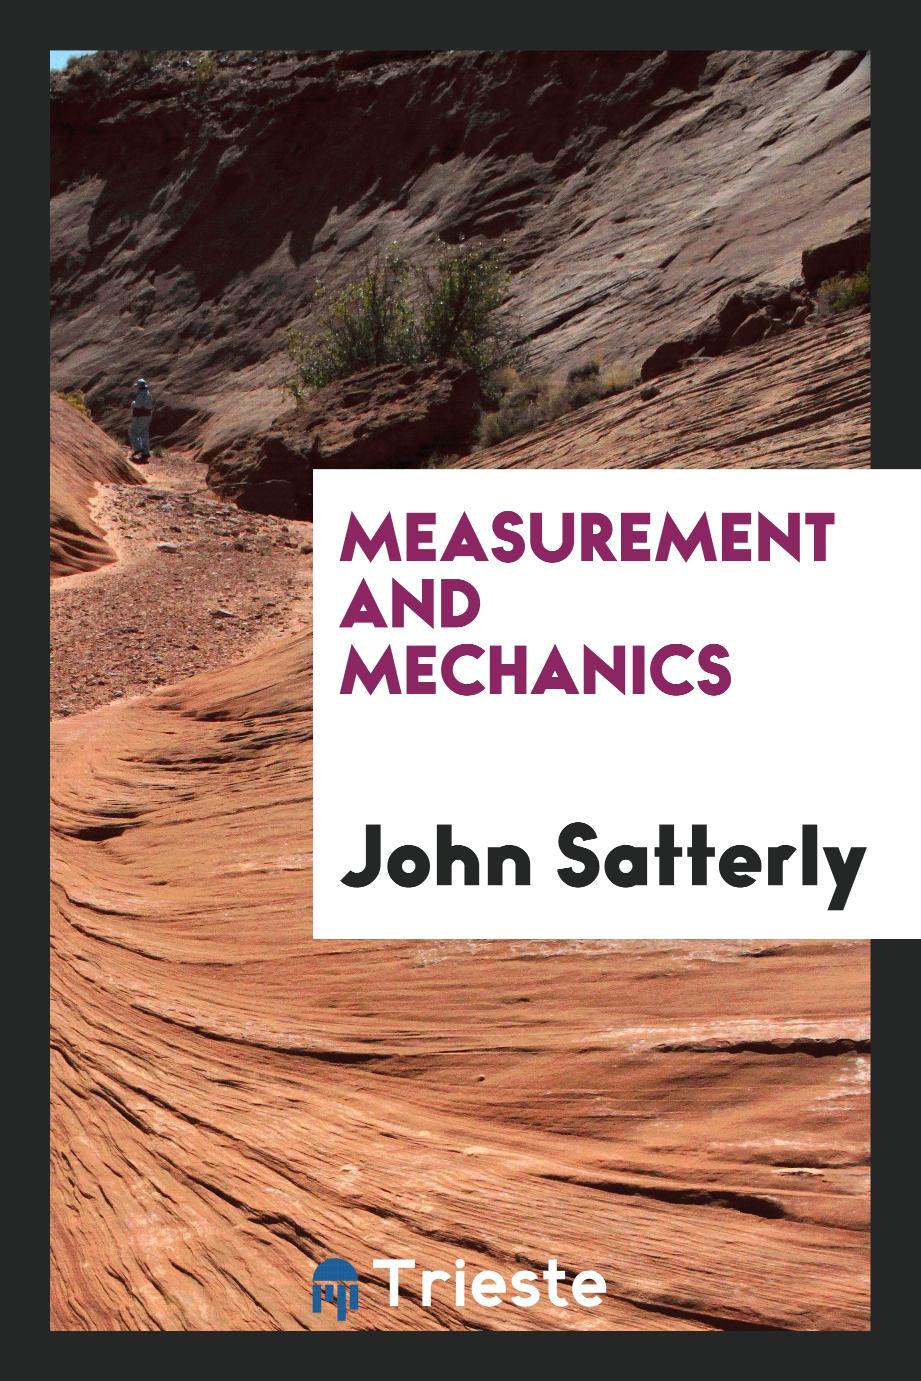 Measurement and mechanics